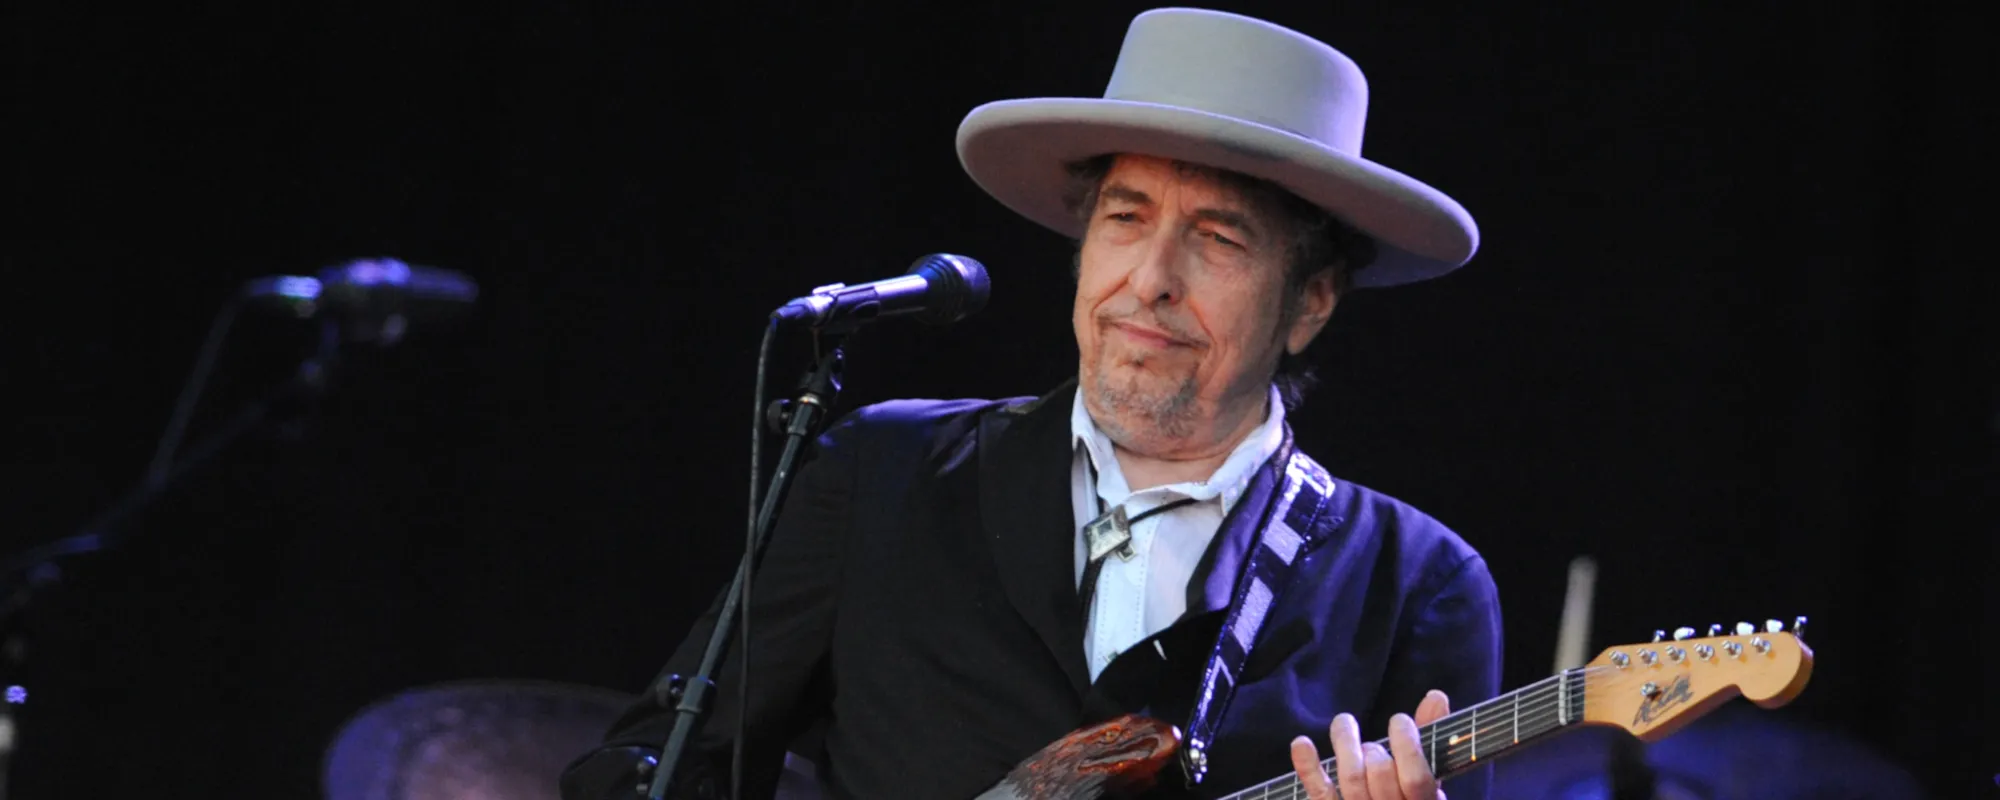 Bob Dylan Announces New West Coast 2022 Tour Dates